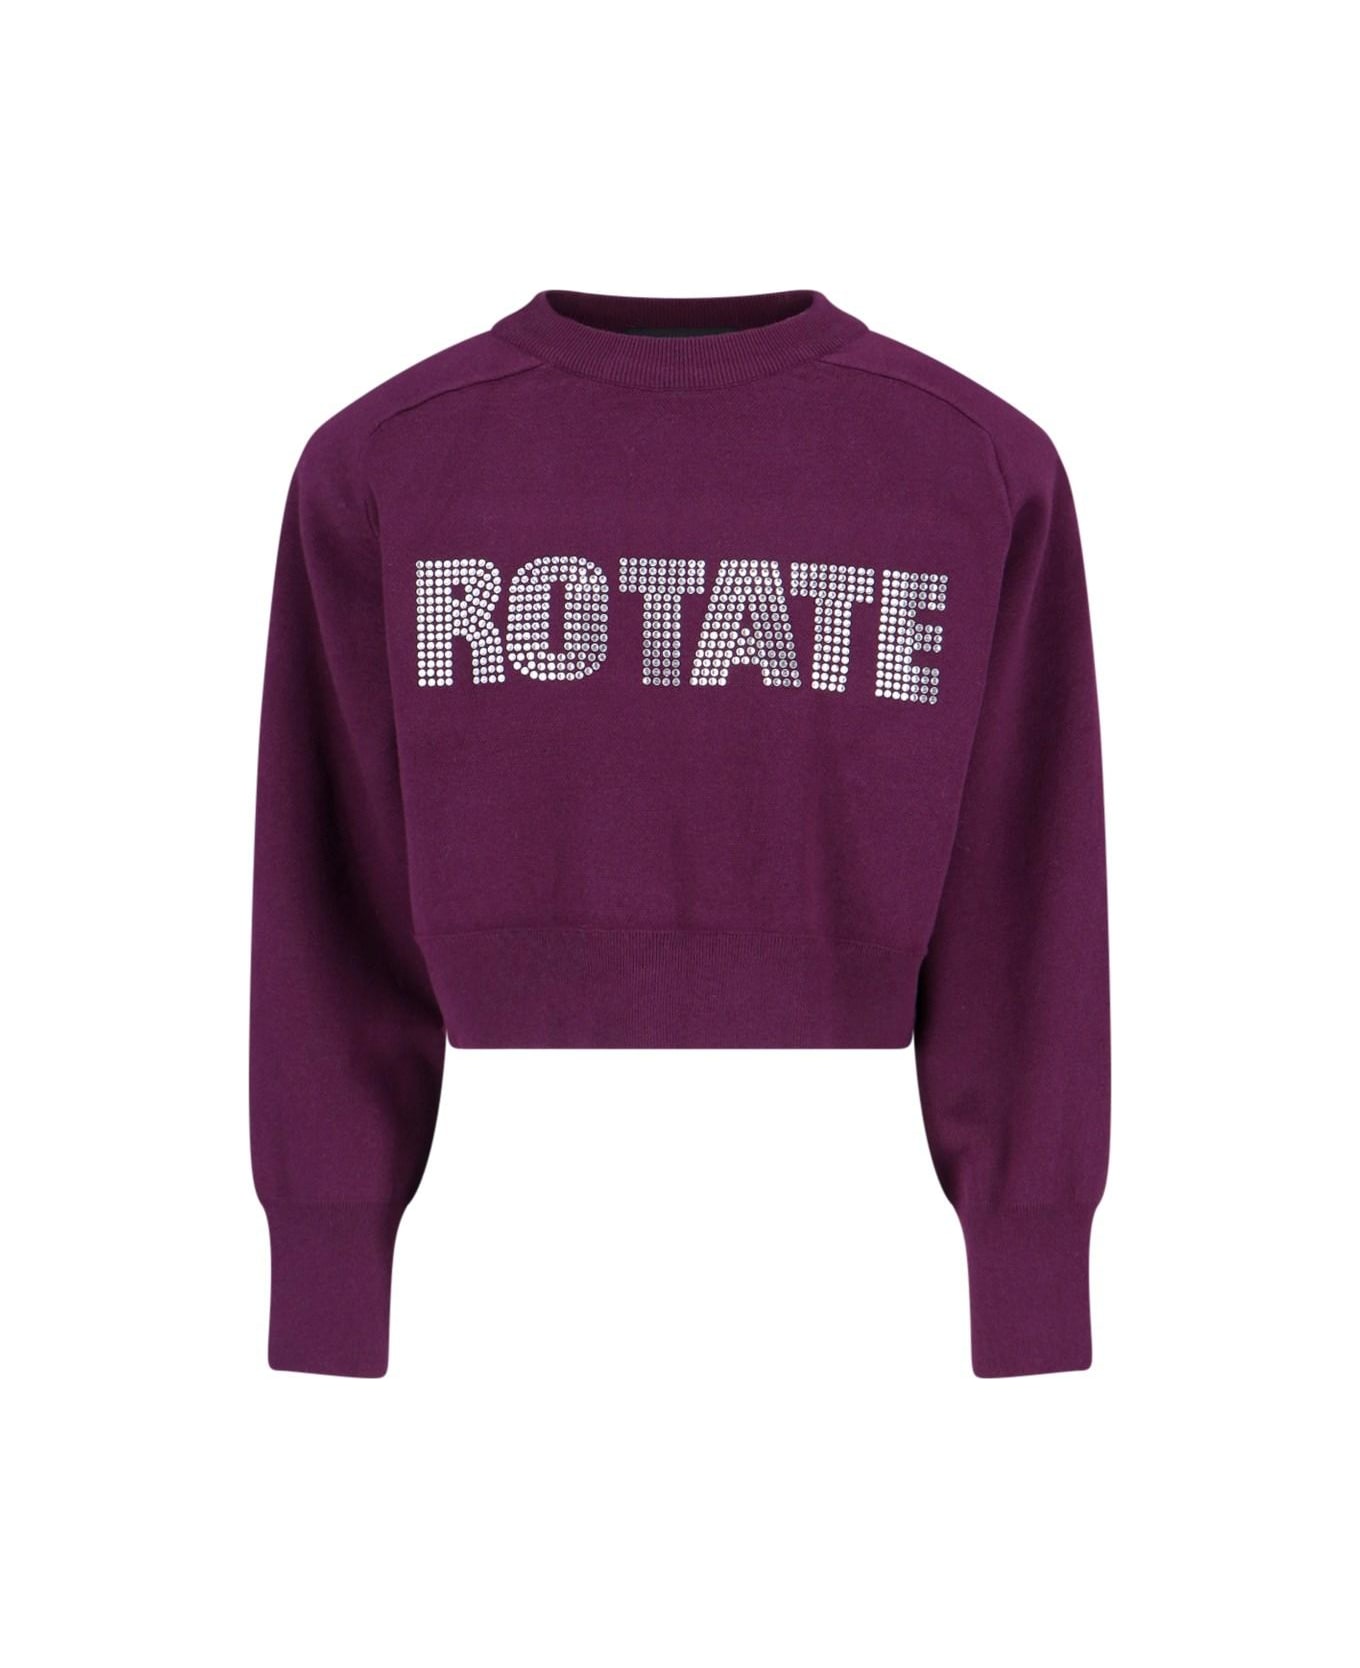 Rotate by Birger Christensen Logo Cropped Sweatshirt - Burgundy